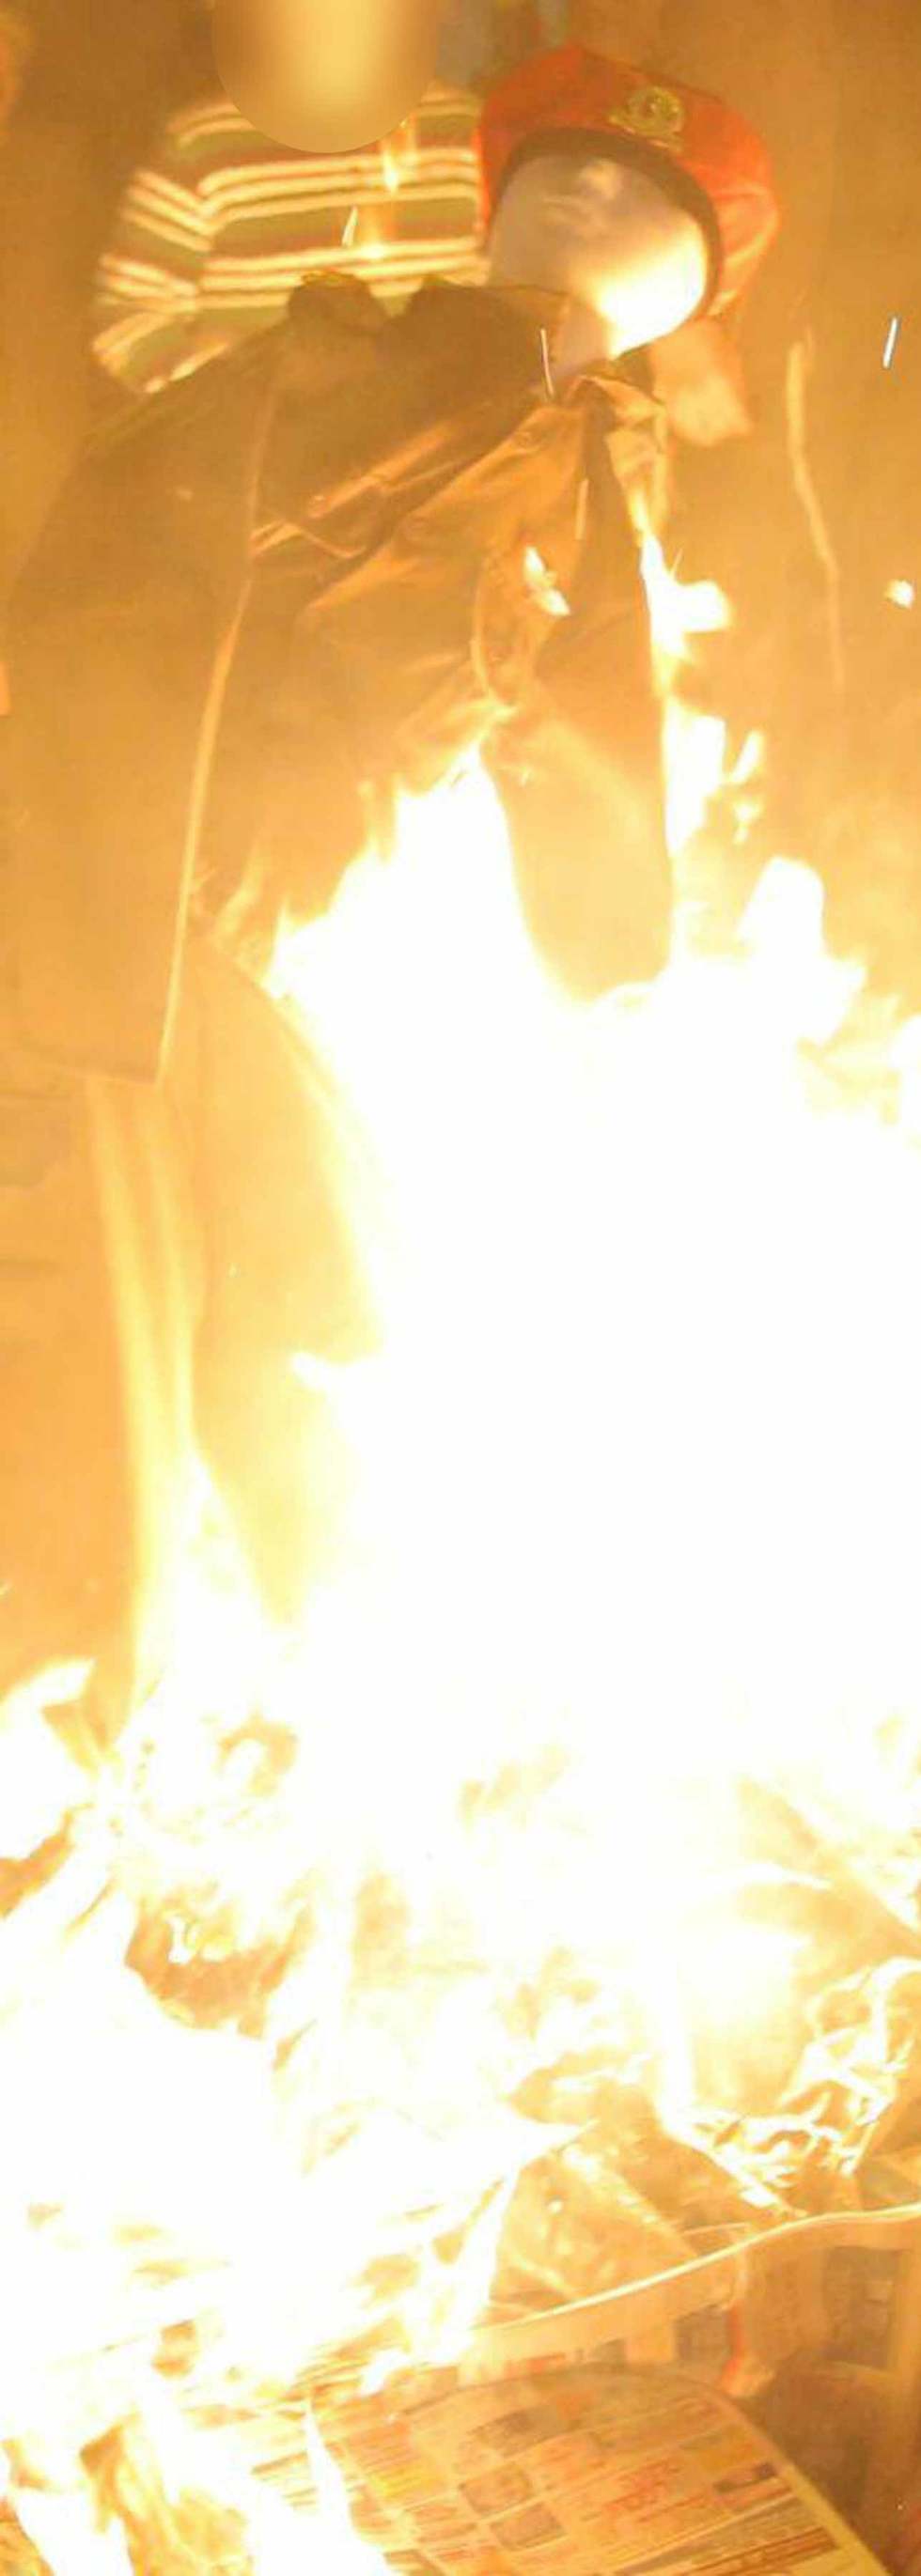 שריפת בובת חייל (צילום: חיים גולדברג - אתר כיכר השבת)